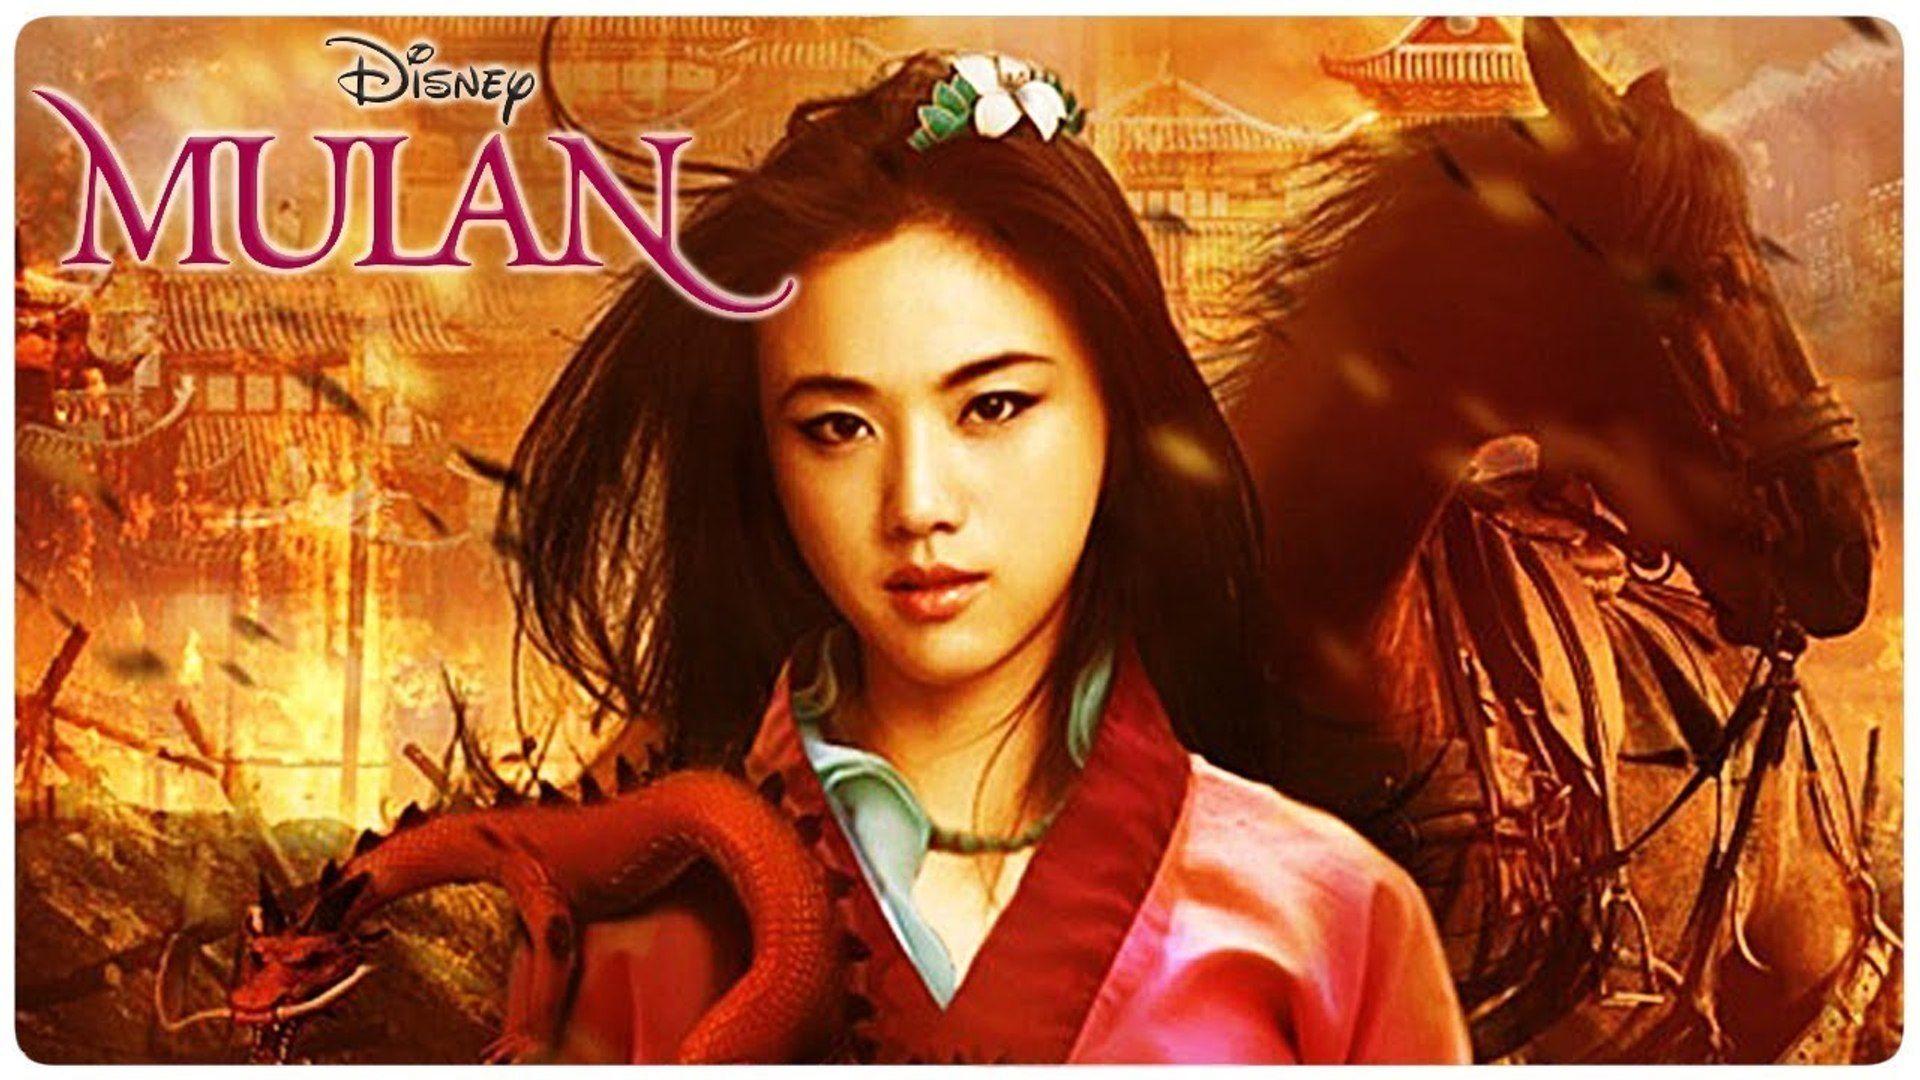 Mulan 2020 Wallpapers - Top Free Mulan 2020 Backgrounds ...